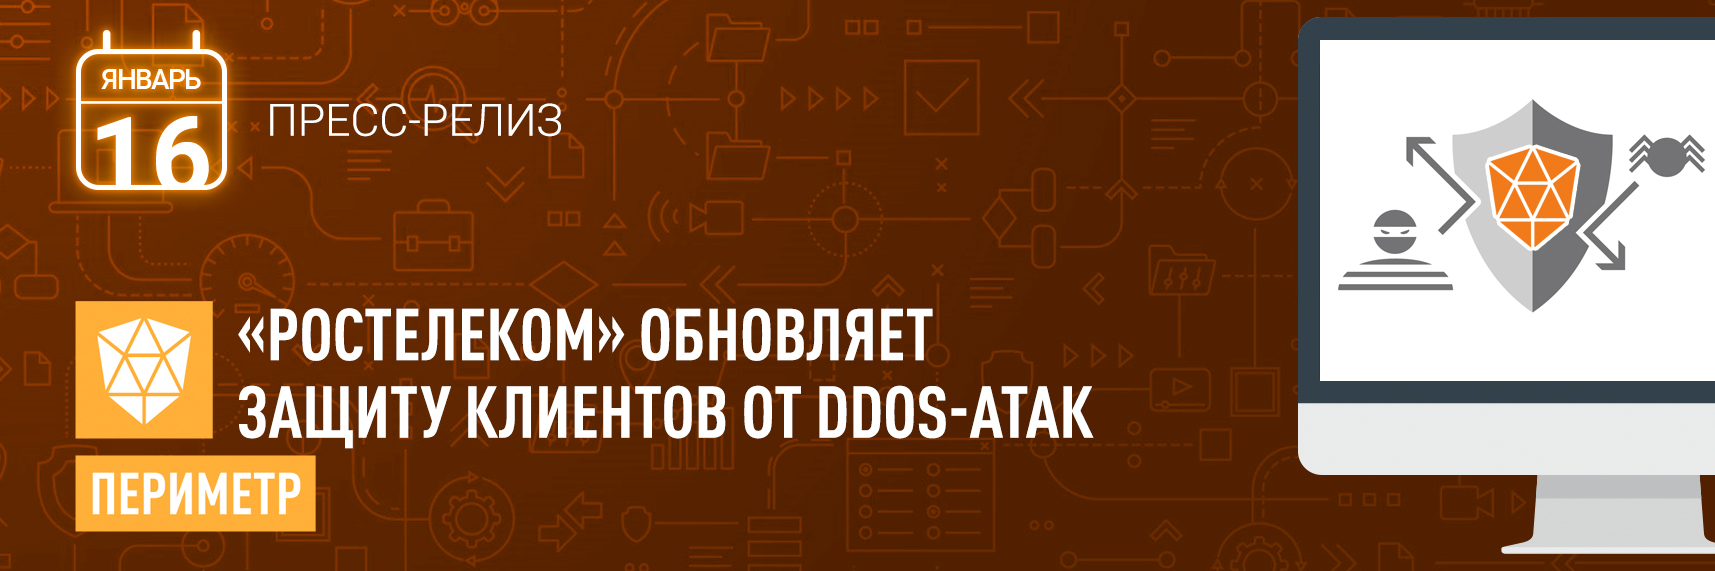 «Ростелеком» обновляет защиту клиентов от DDoS-атак